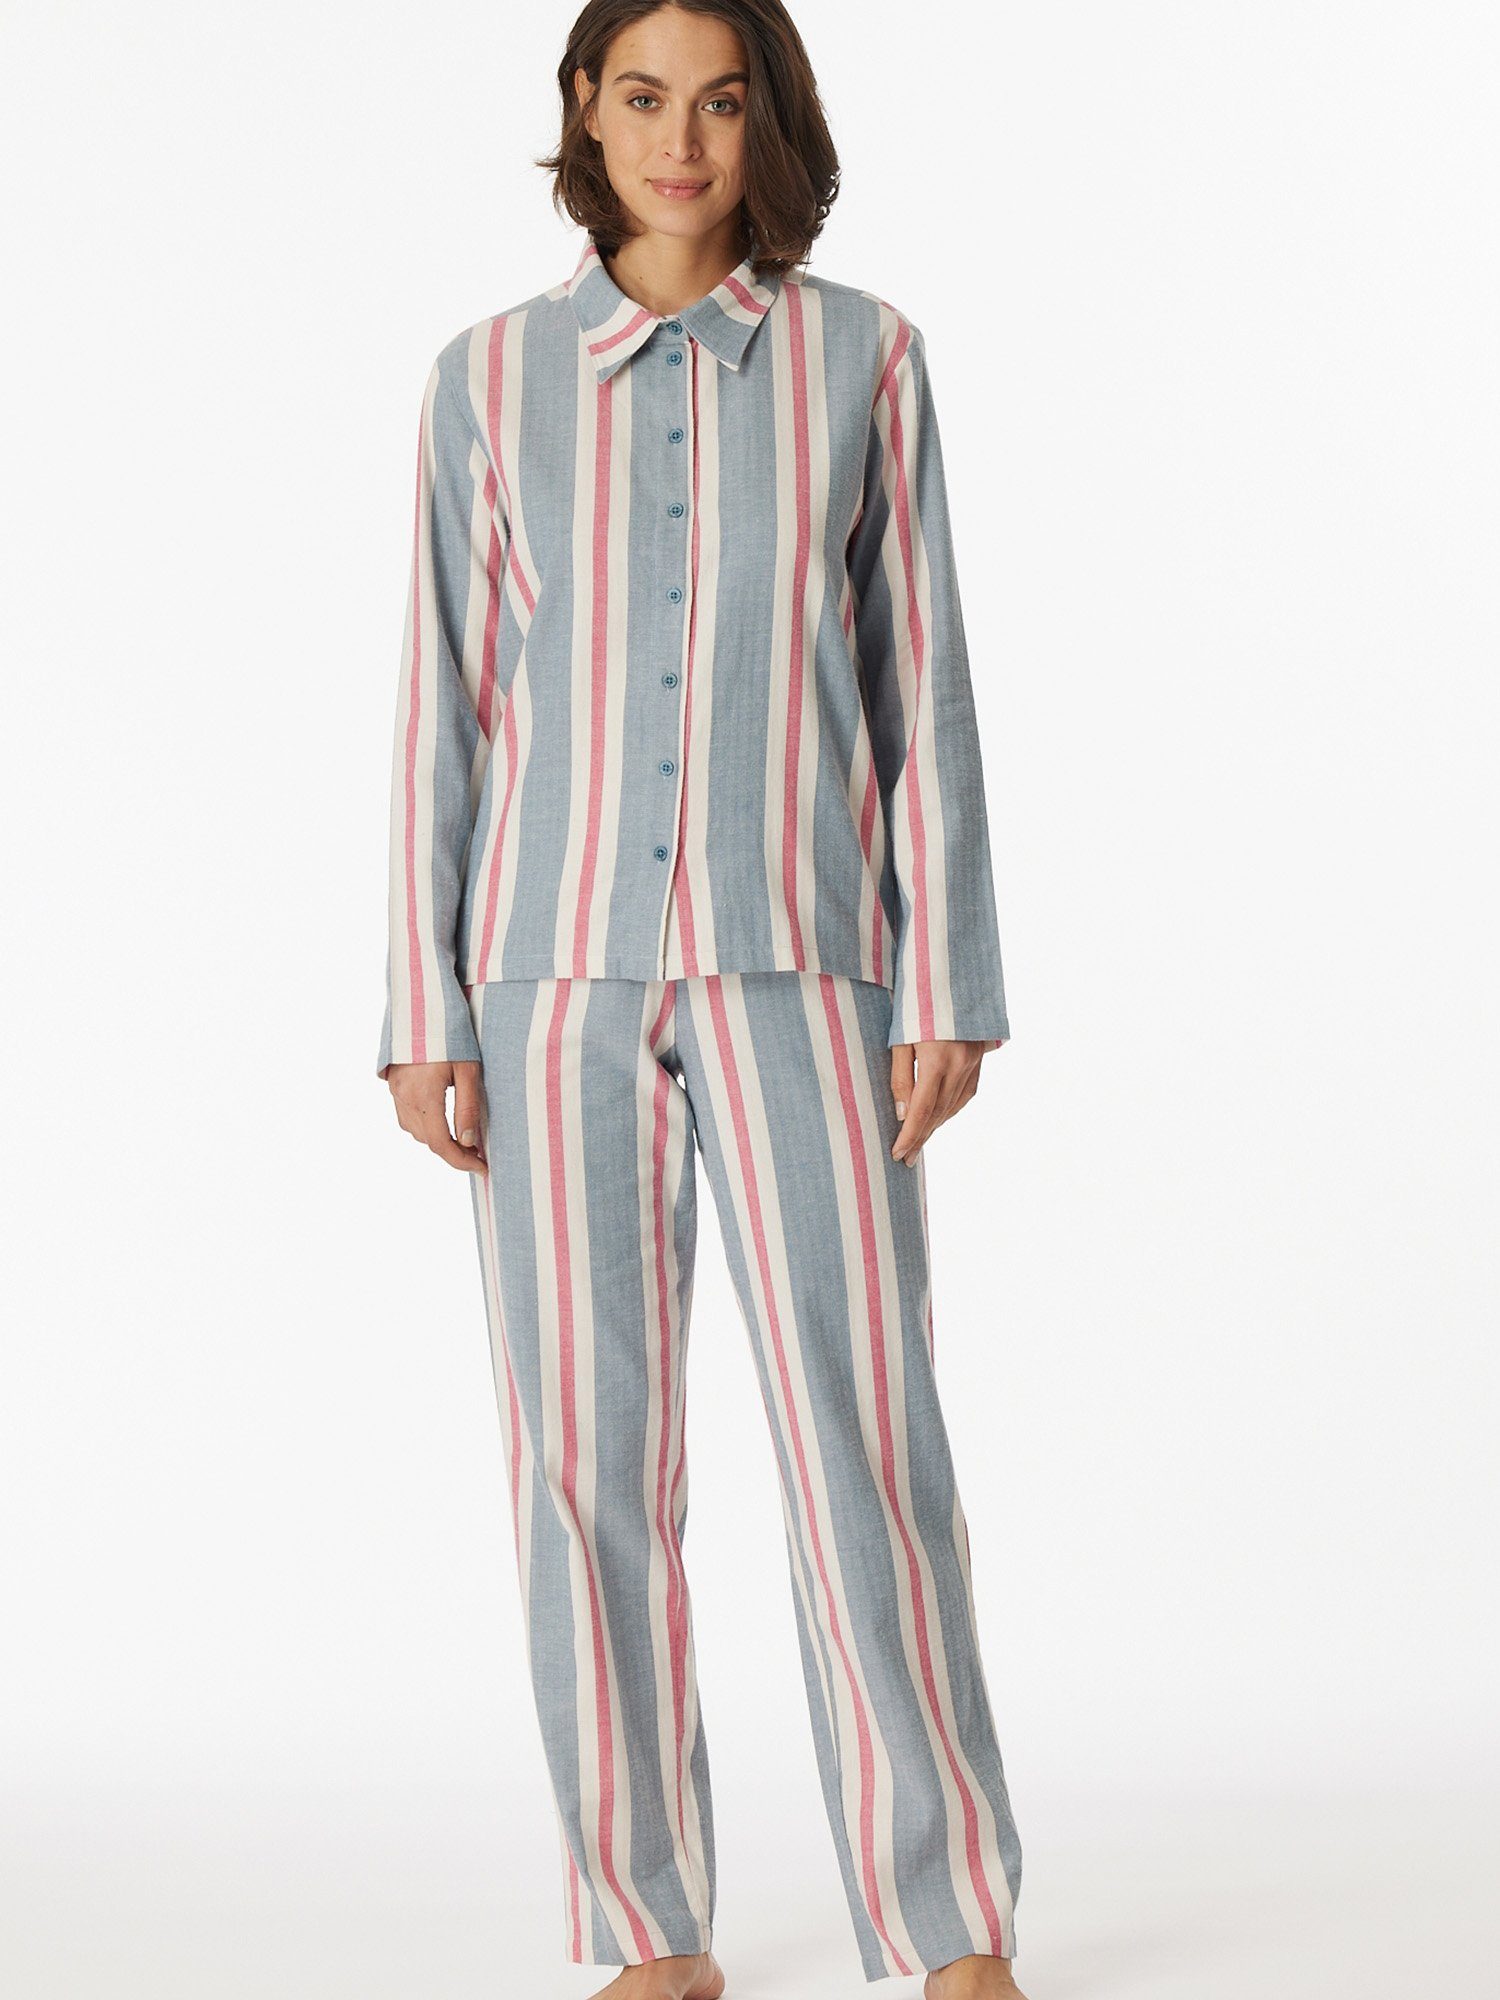 schlafmode Pyjama Premium multicolor Selected Schiesser pyjama schlafanzug